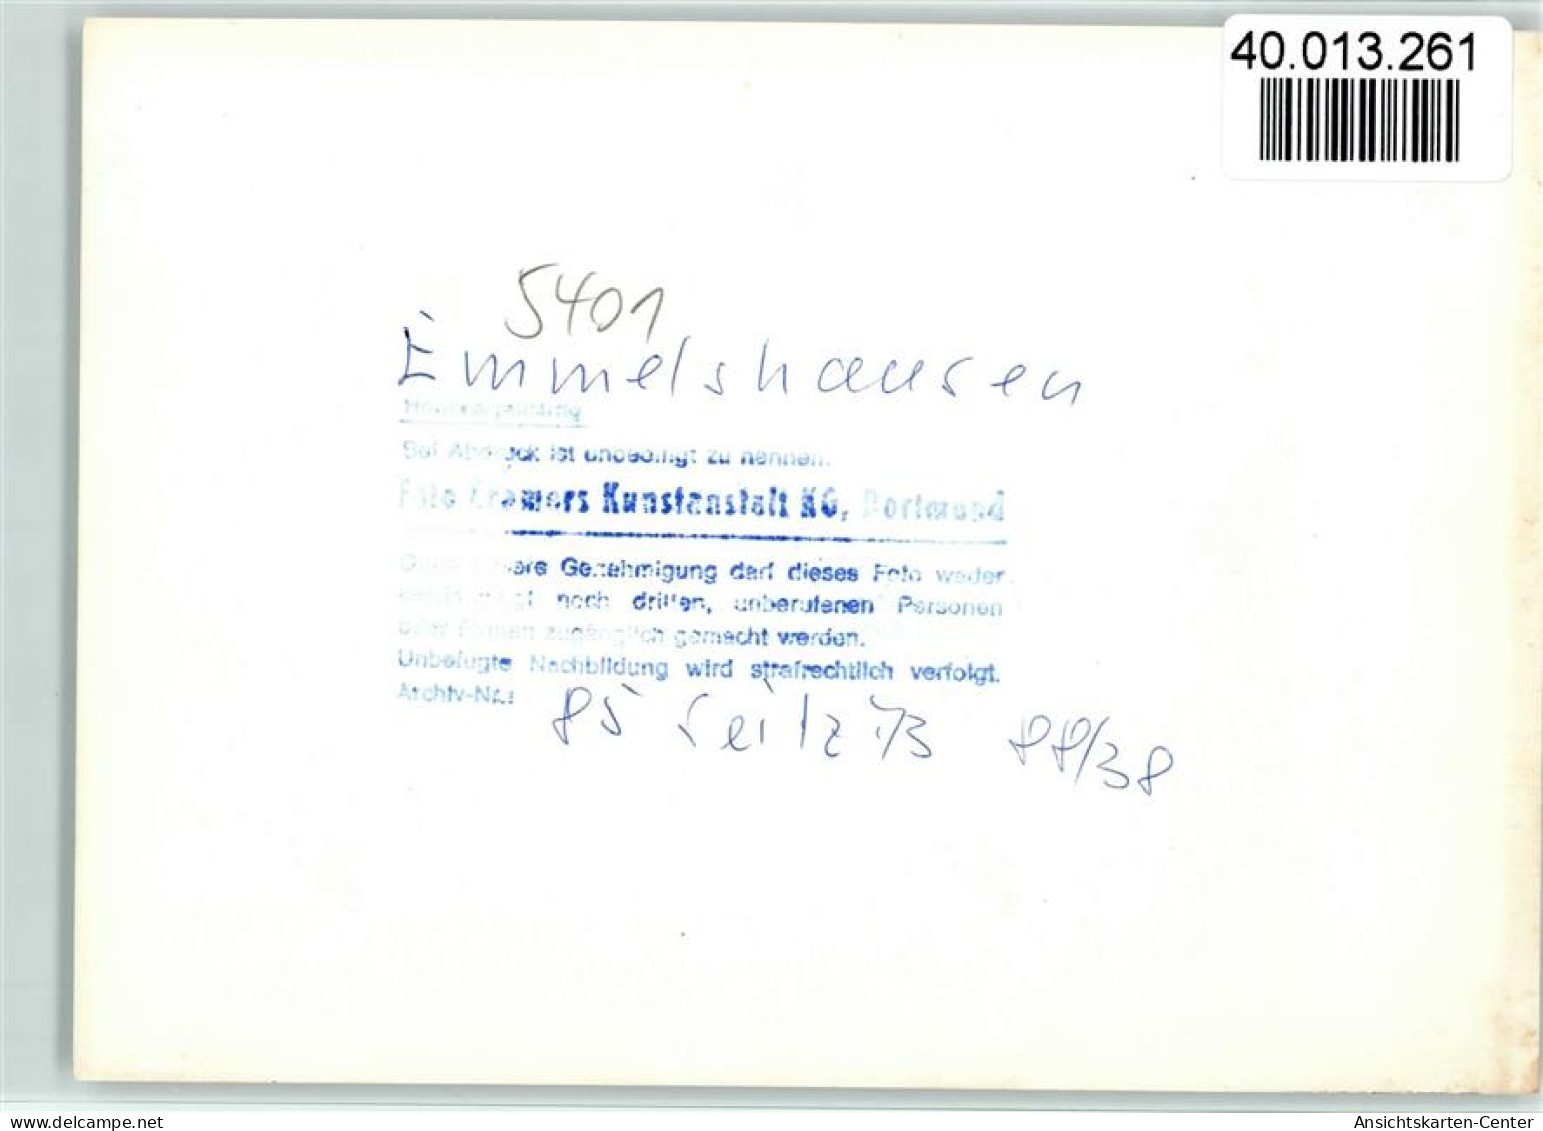 40013261 - Emmelshausen - Emmelshausen